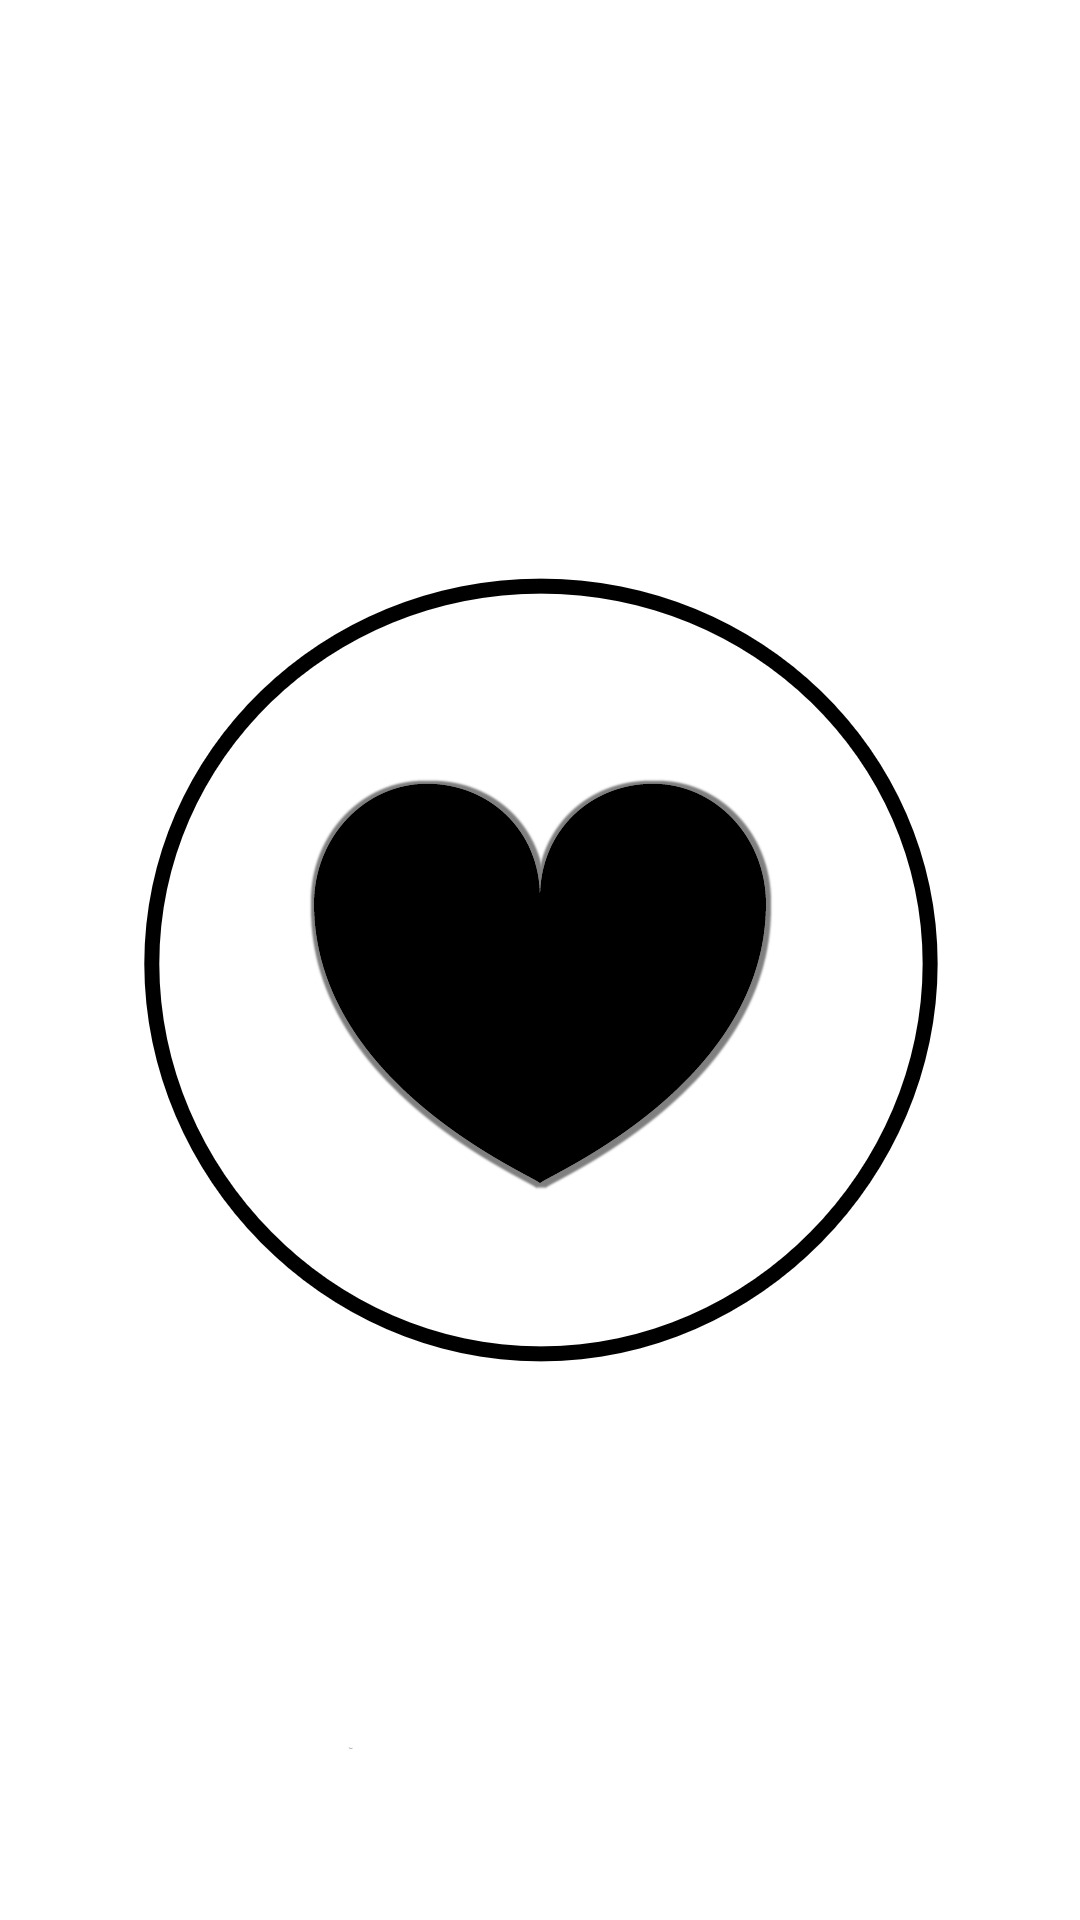 Instagram-cover-heart-blackwhite-lotnotes.com.jpg